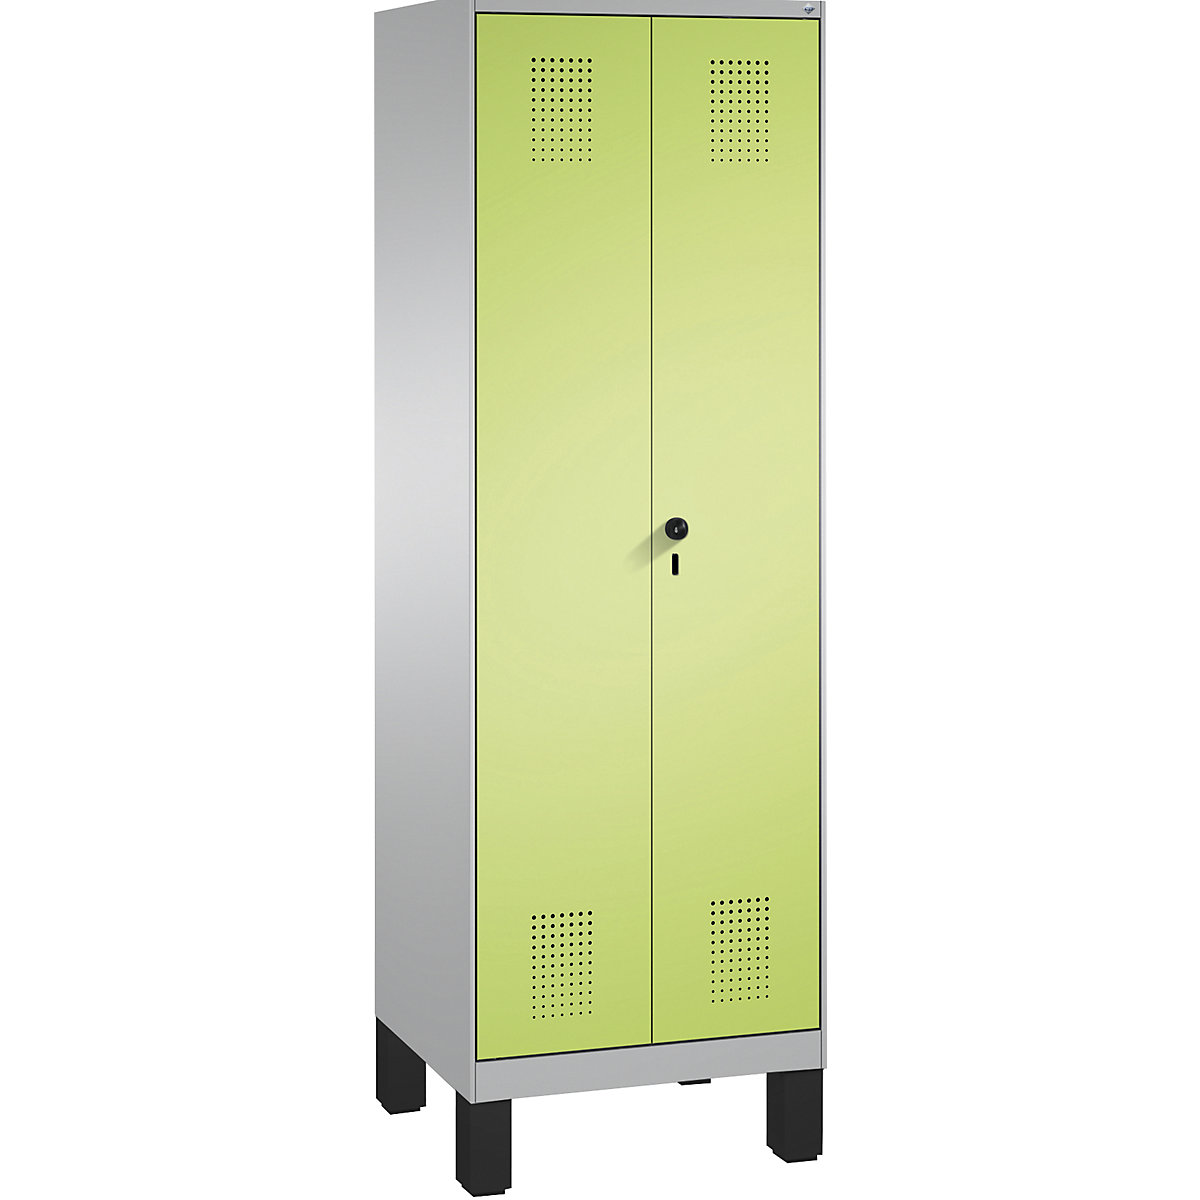 Úklidová/přístrojová skříň EVOLO – C+P, zkrácená dělicí stěna, 6 háků, oddíly 2 x 300 mm, s nohami, bílý hliník / viridianová zelená-5